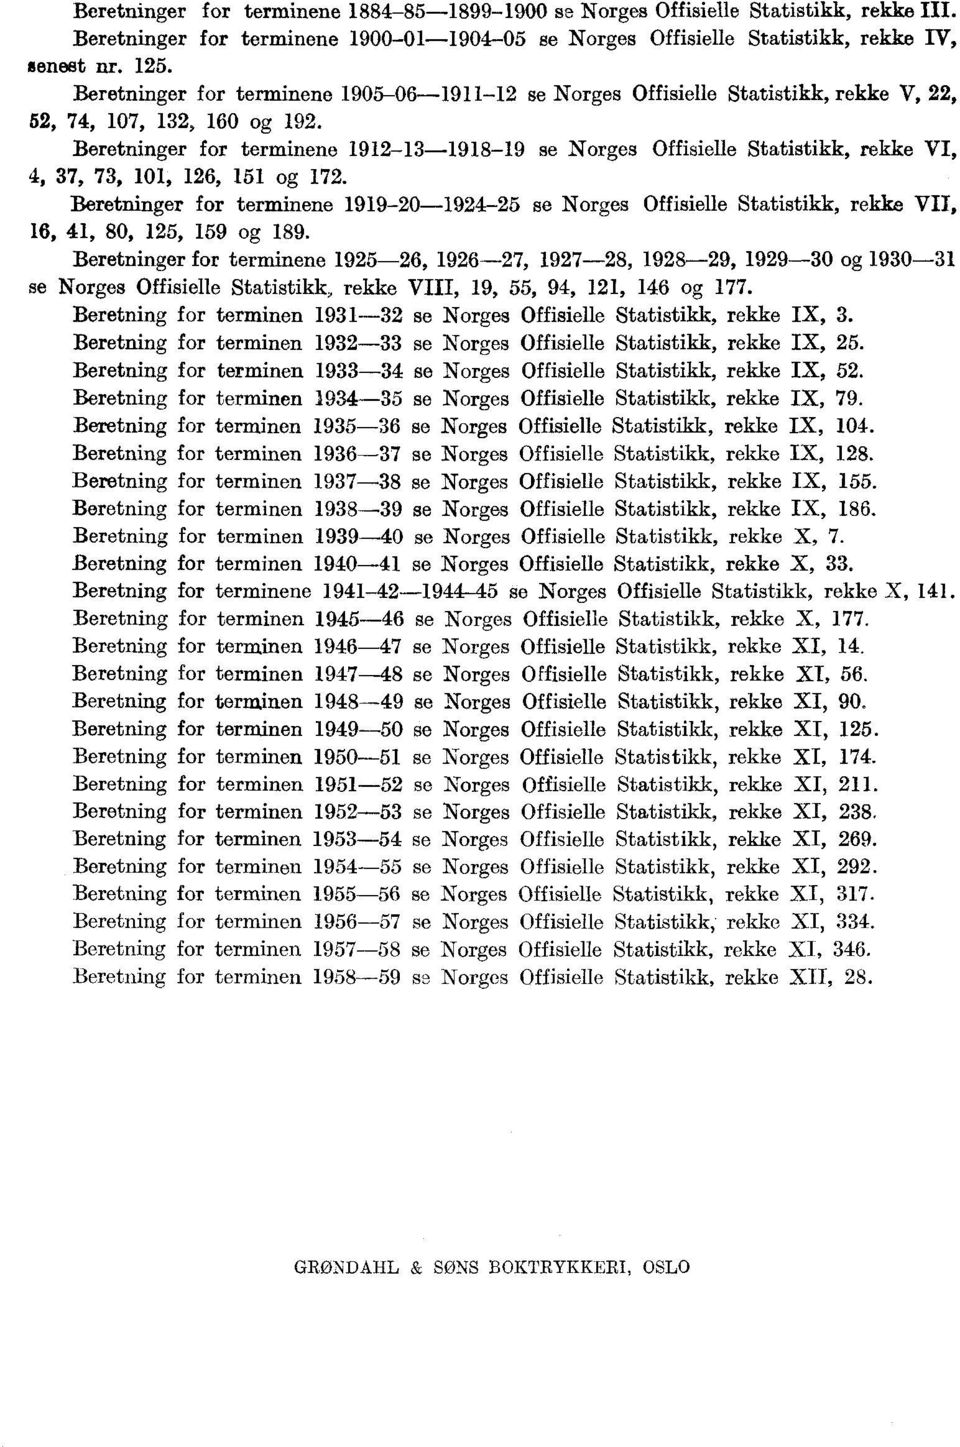 Beretninger for terminene 1912-13-1918-19 se Norges Offisielle Statistikk, rekke VI, 4, 37, 73, 11, 126, 151 og 172.